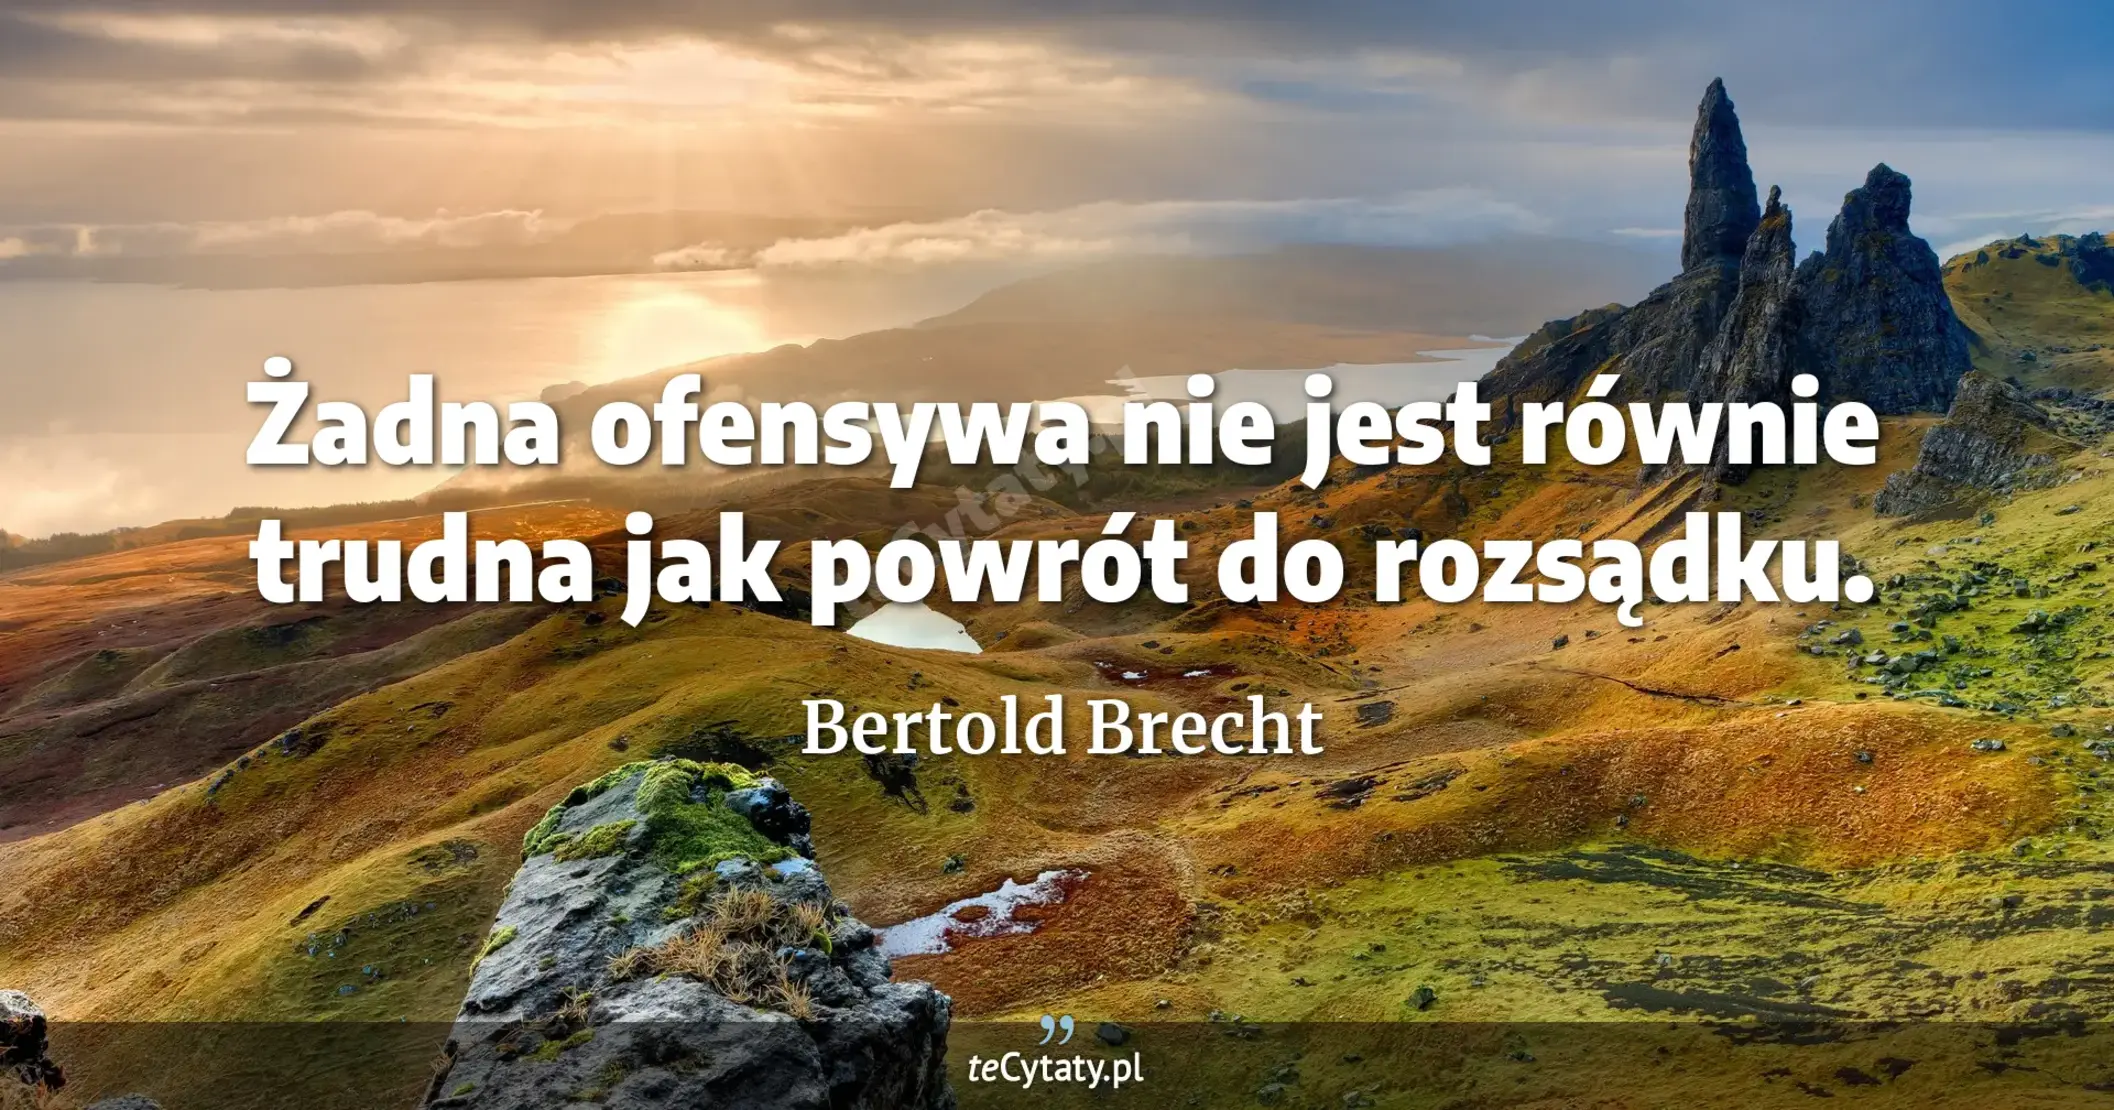 Żadna ofensywa nie jest równie trudna jak powrót do rozsądku. - Bertold Brecht